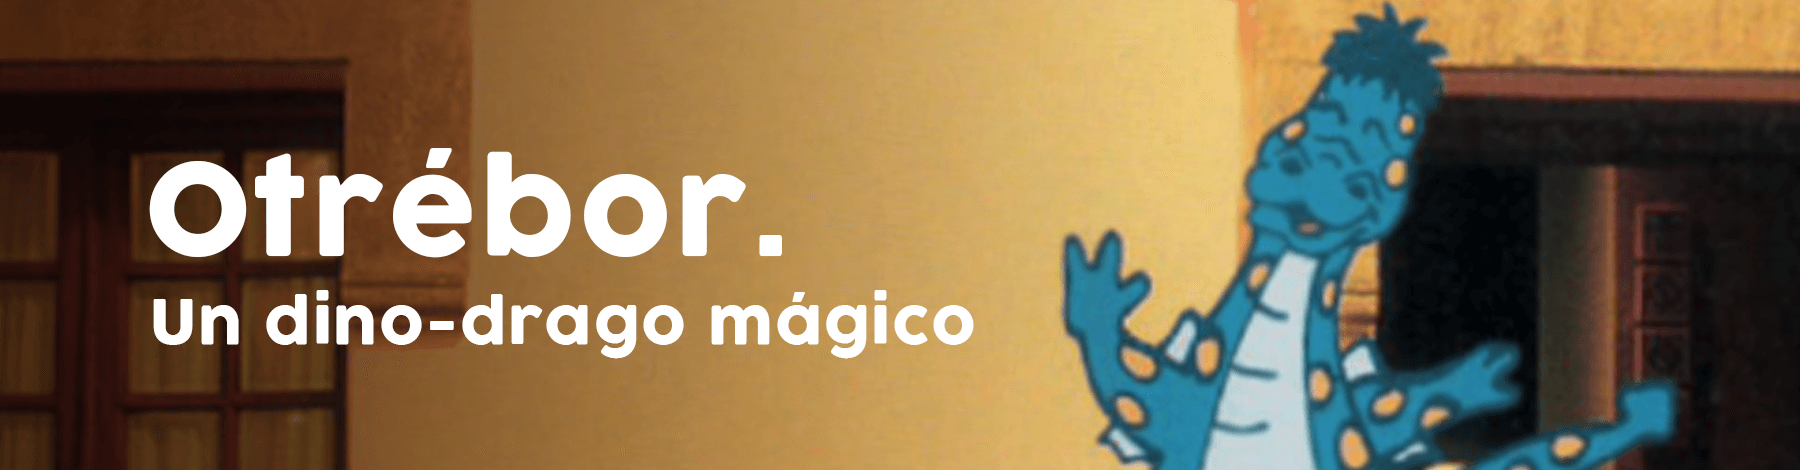 Otrébor : un dino-drago mágico | Museo Amparo, Puebla | Museo Amparo, Puebla.